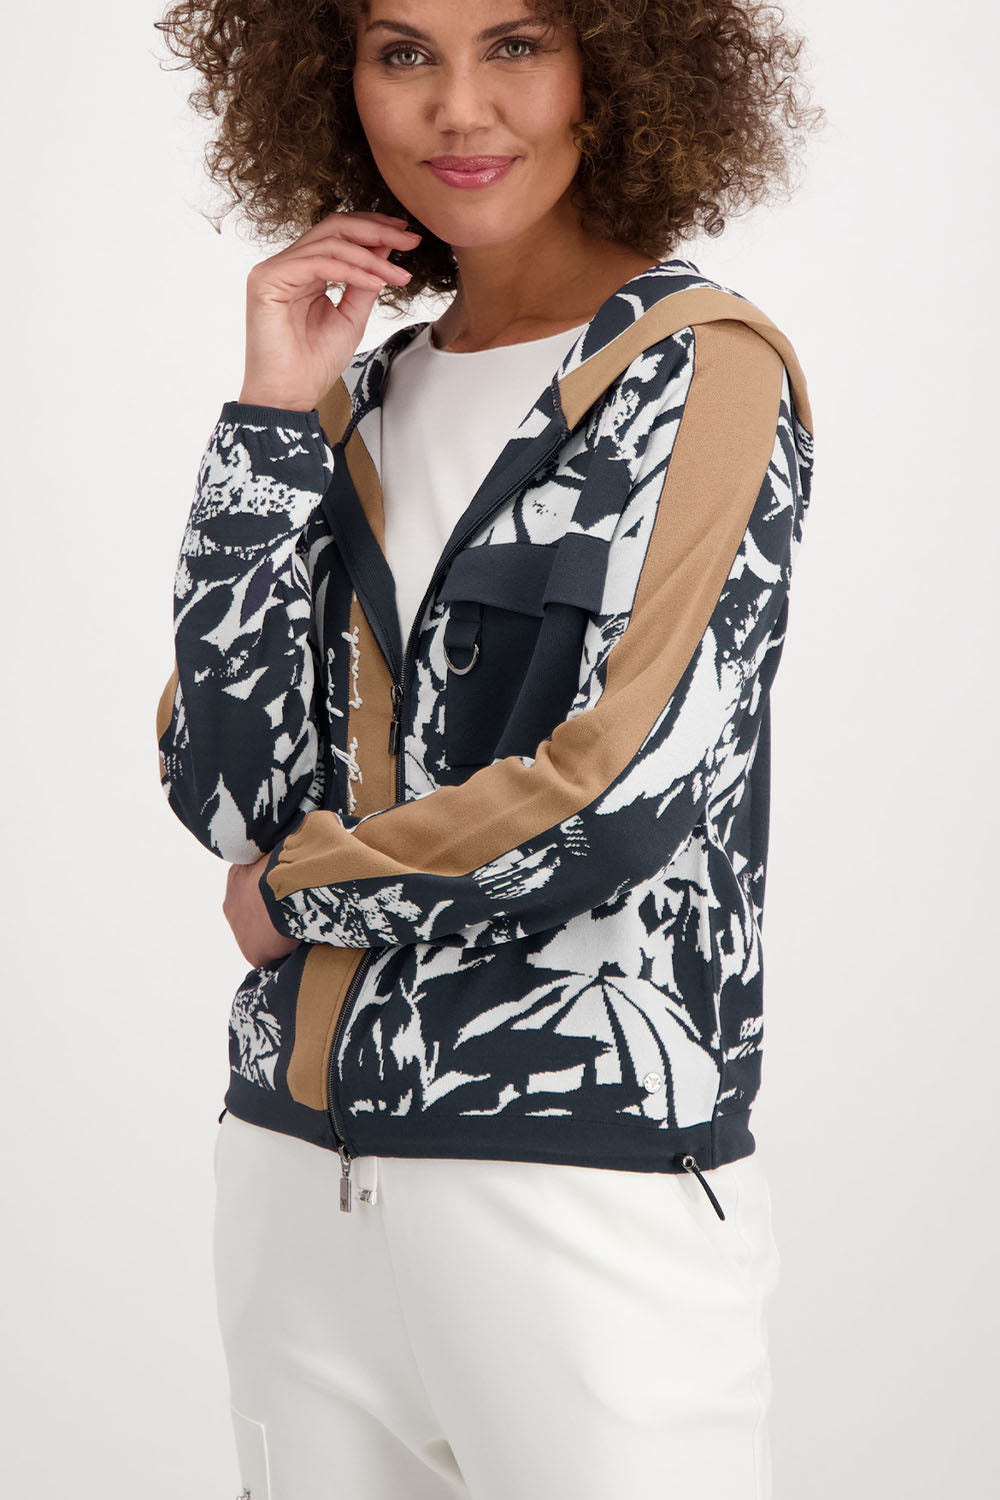 Monari Jacquard Knit Jacket M406875